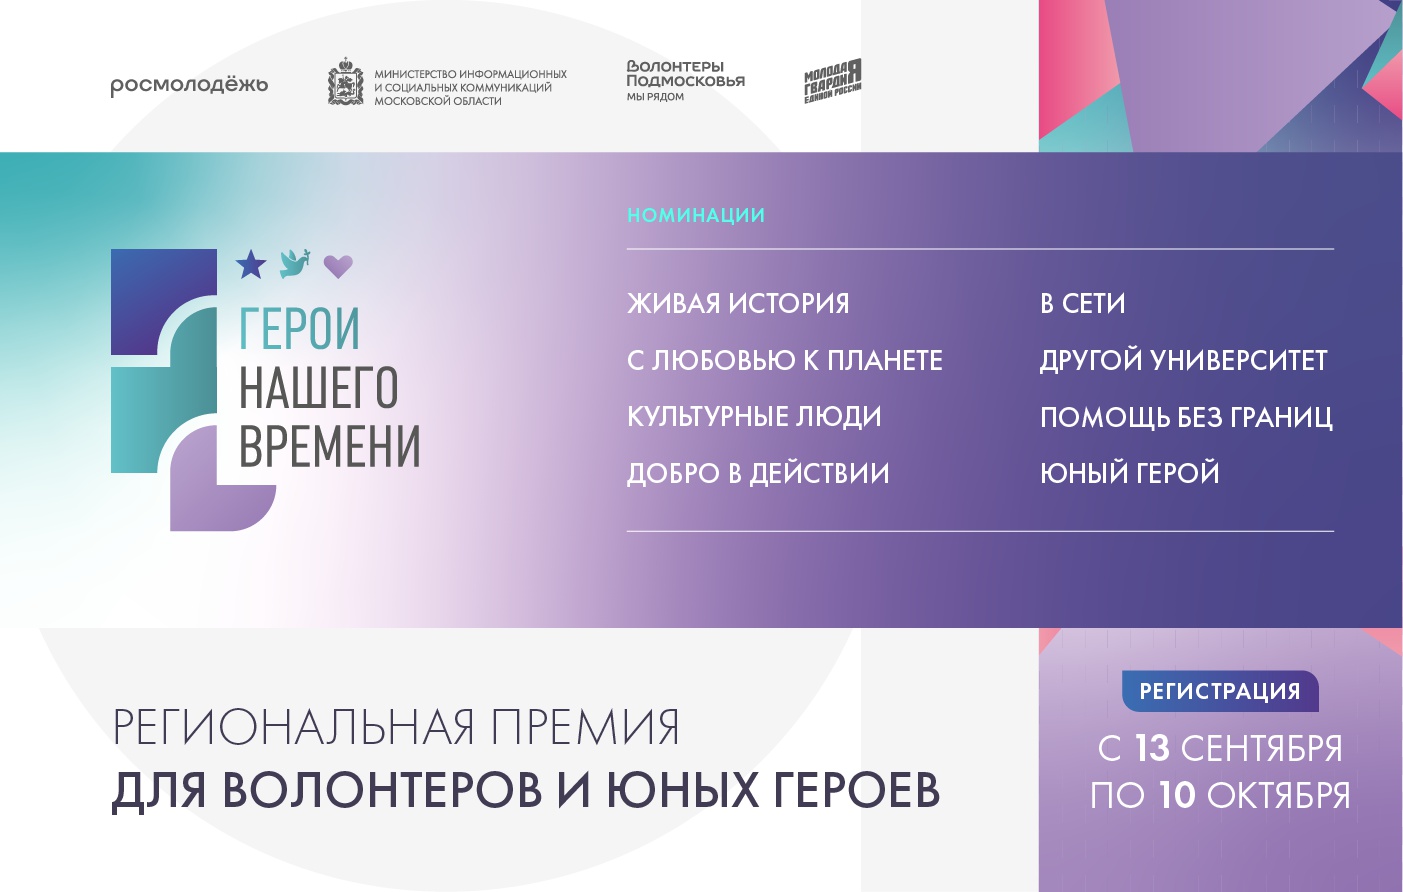 Московское областное отделение МГЕР объявило о начале приема заявок на премию для добровольцев и юных героев региона